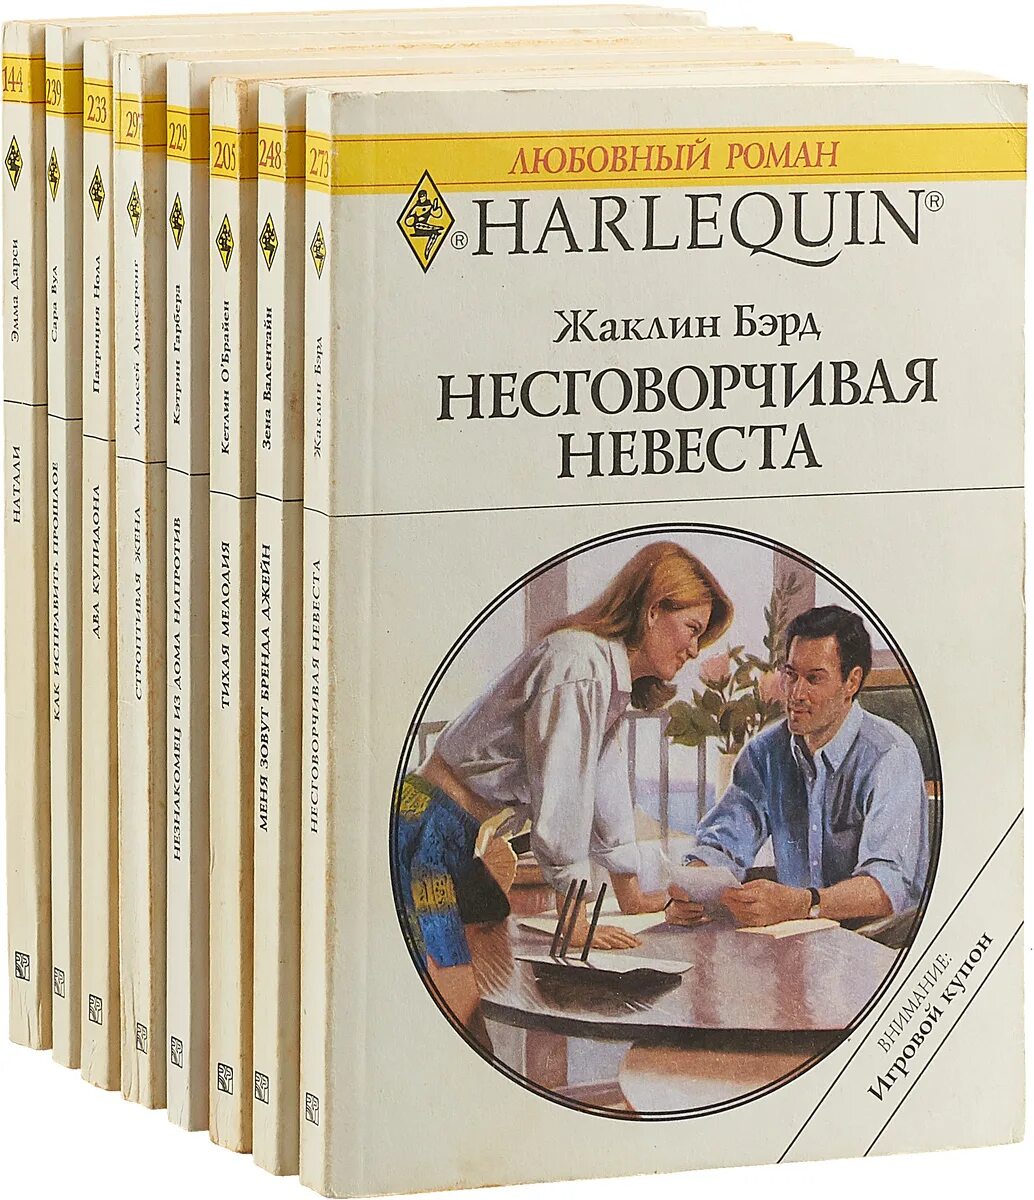 Читать электронную библиотеку любовные романы. Любовные романы Арлекин 1992-1993. Harlequin любовные романы. Harlequin книги.